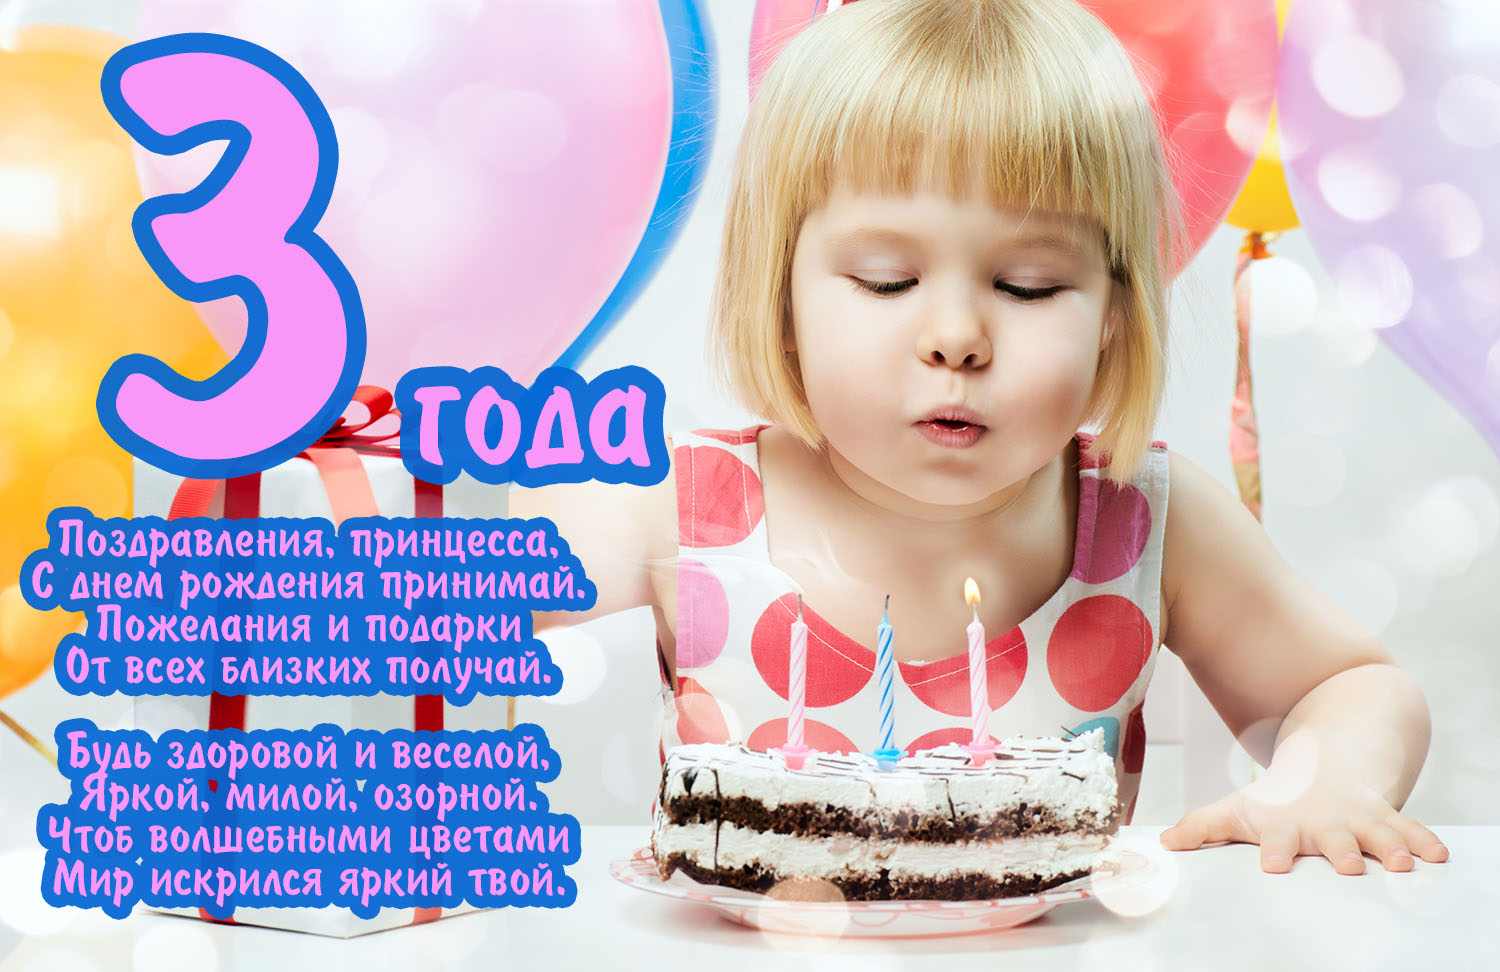 Поздравления на день рождения 3 года девочке (50 картинок)